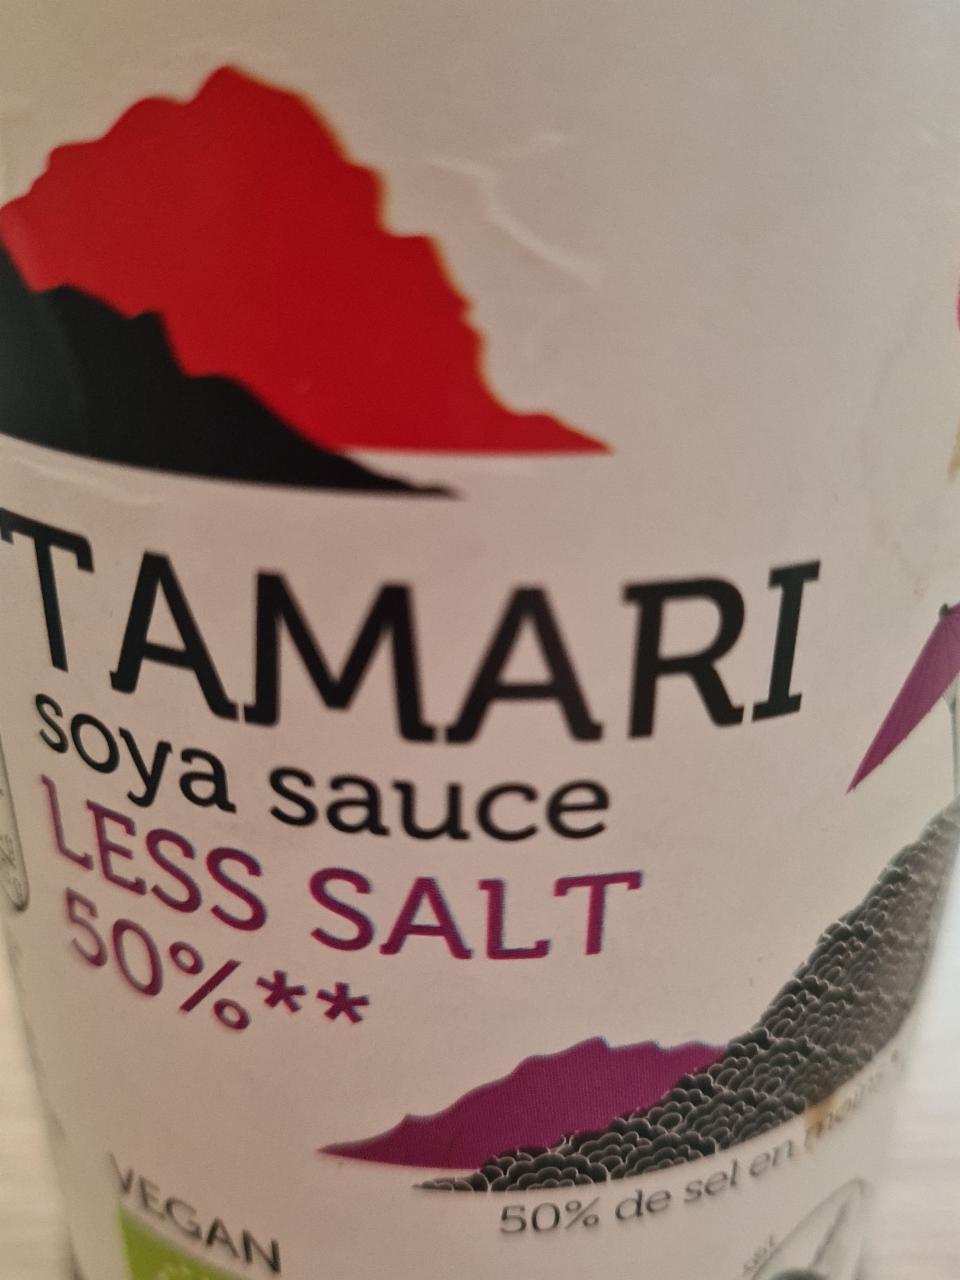 Fotografie - Tamari Soya sauce Less Salt sojová omáčka